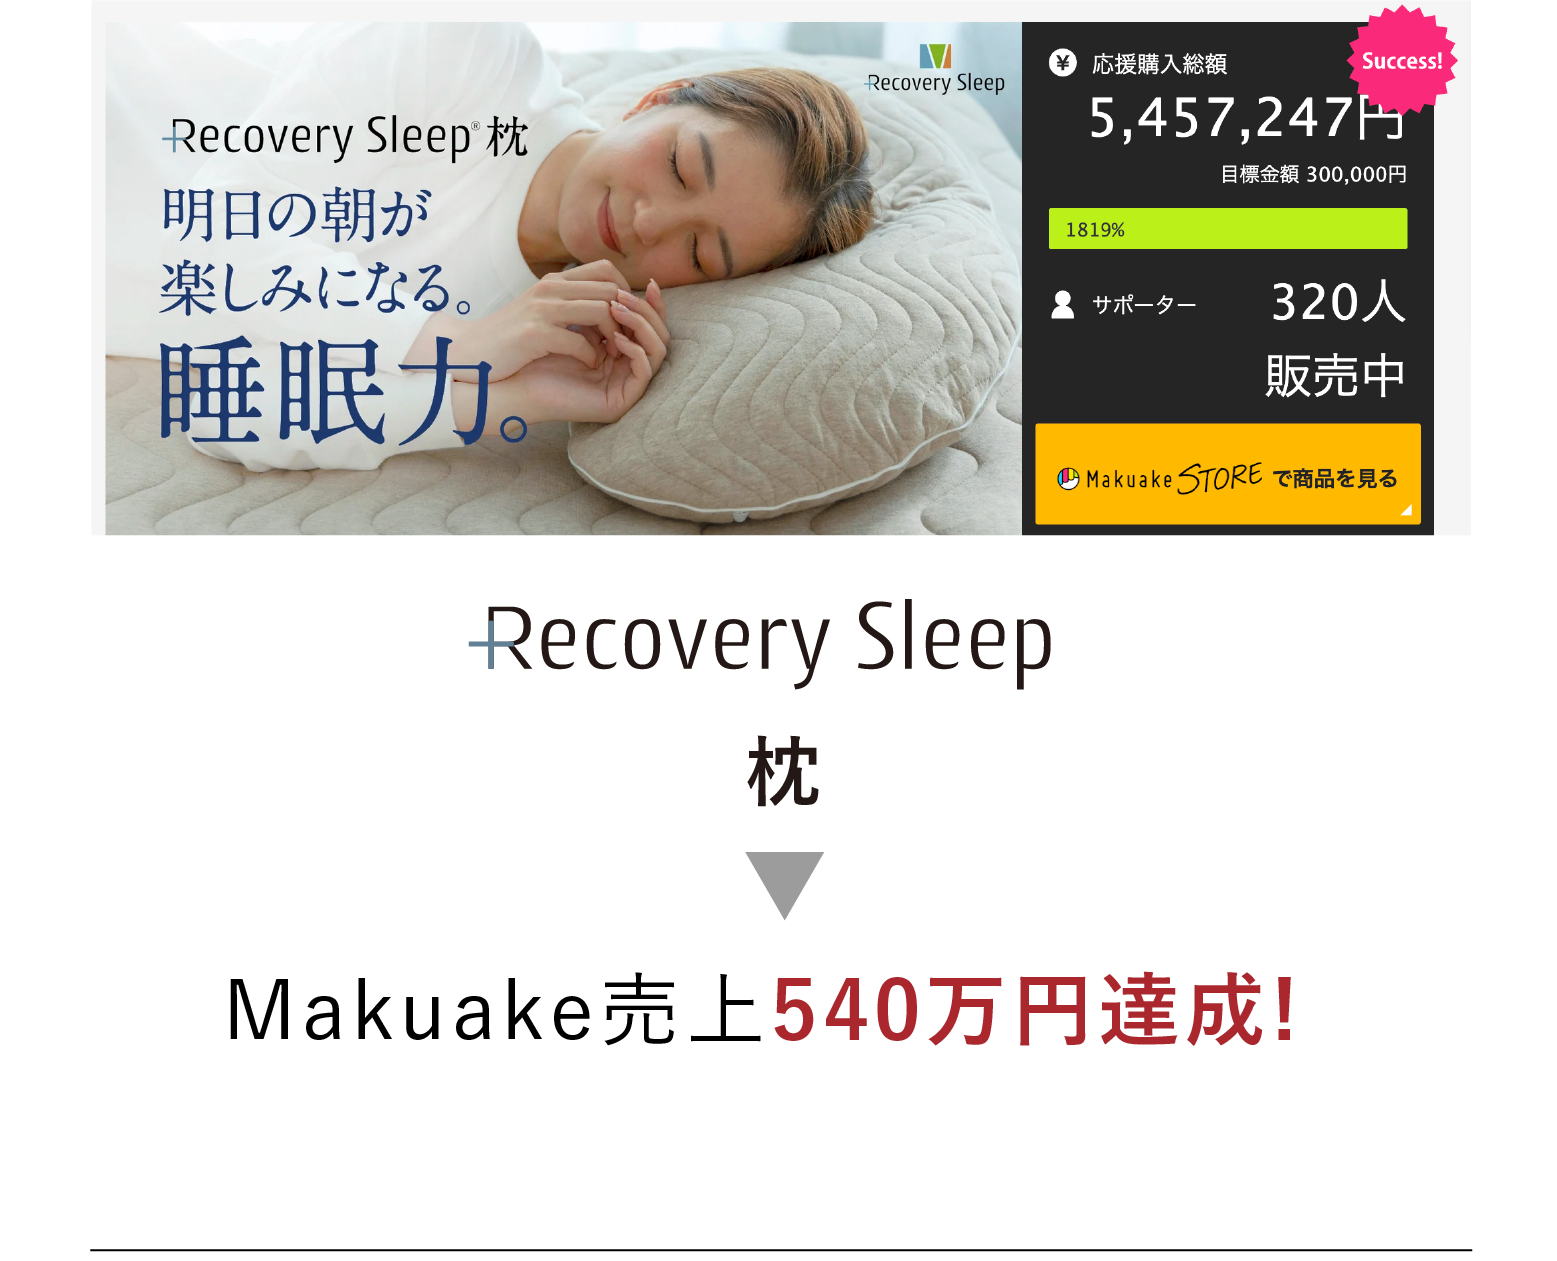 recoverysleep 枕 Makuake売上540万円達成!